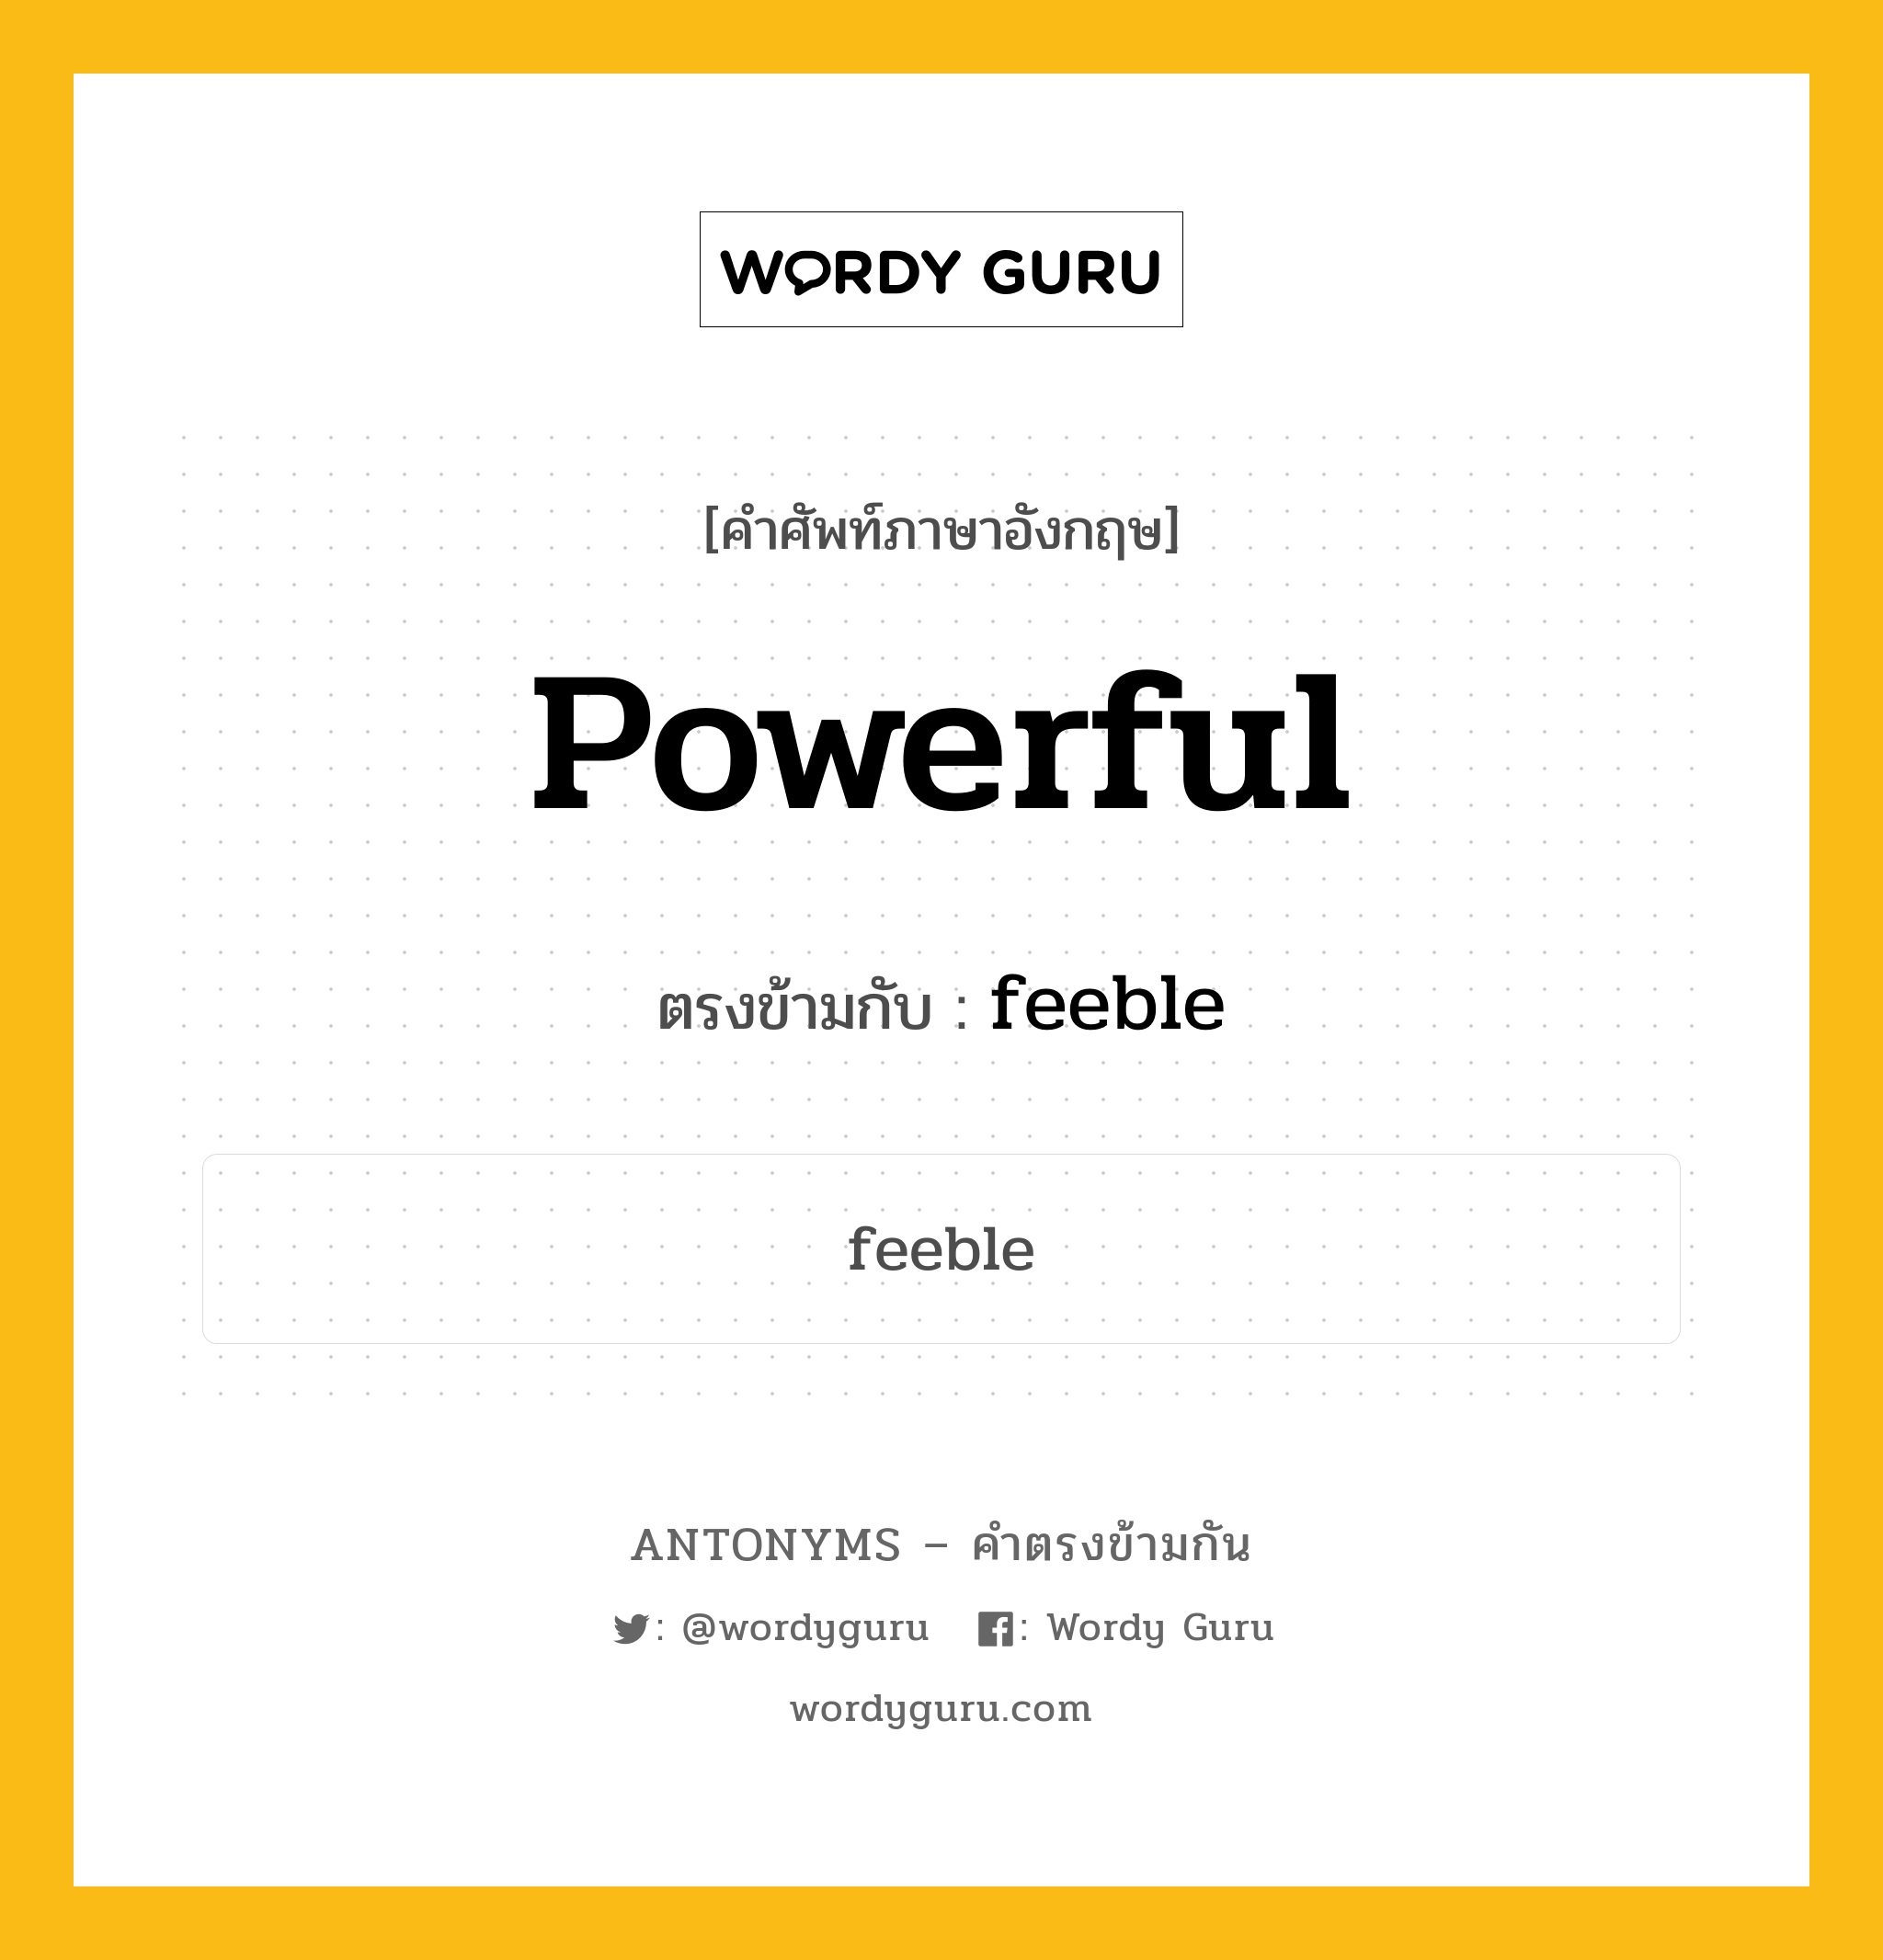 powerful เป็นคำตรงข้ามกับคำไหนบ้าง?, คำศัพท์ภาษาอังกฤษที่มีความหมายตรงข้ามกัน powerful ตรงข้ามกับ feeble หมวด feeble